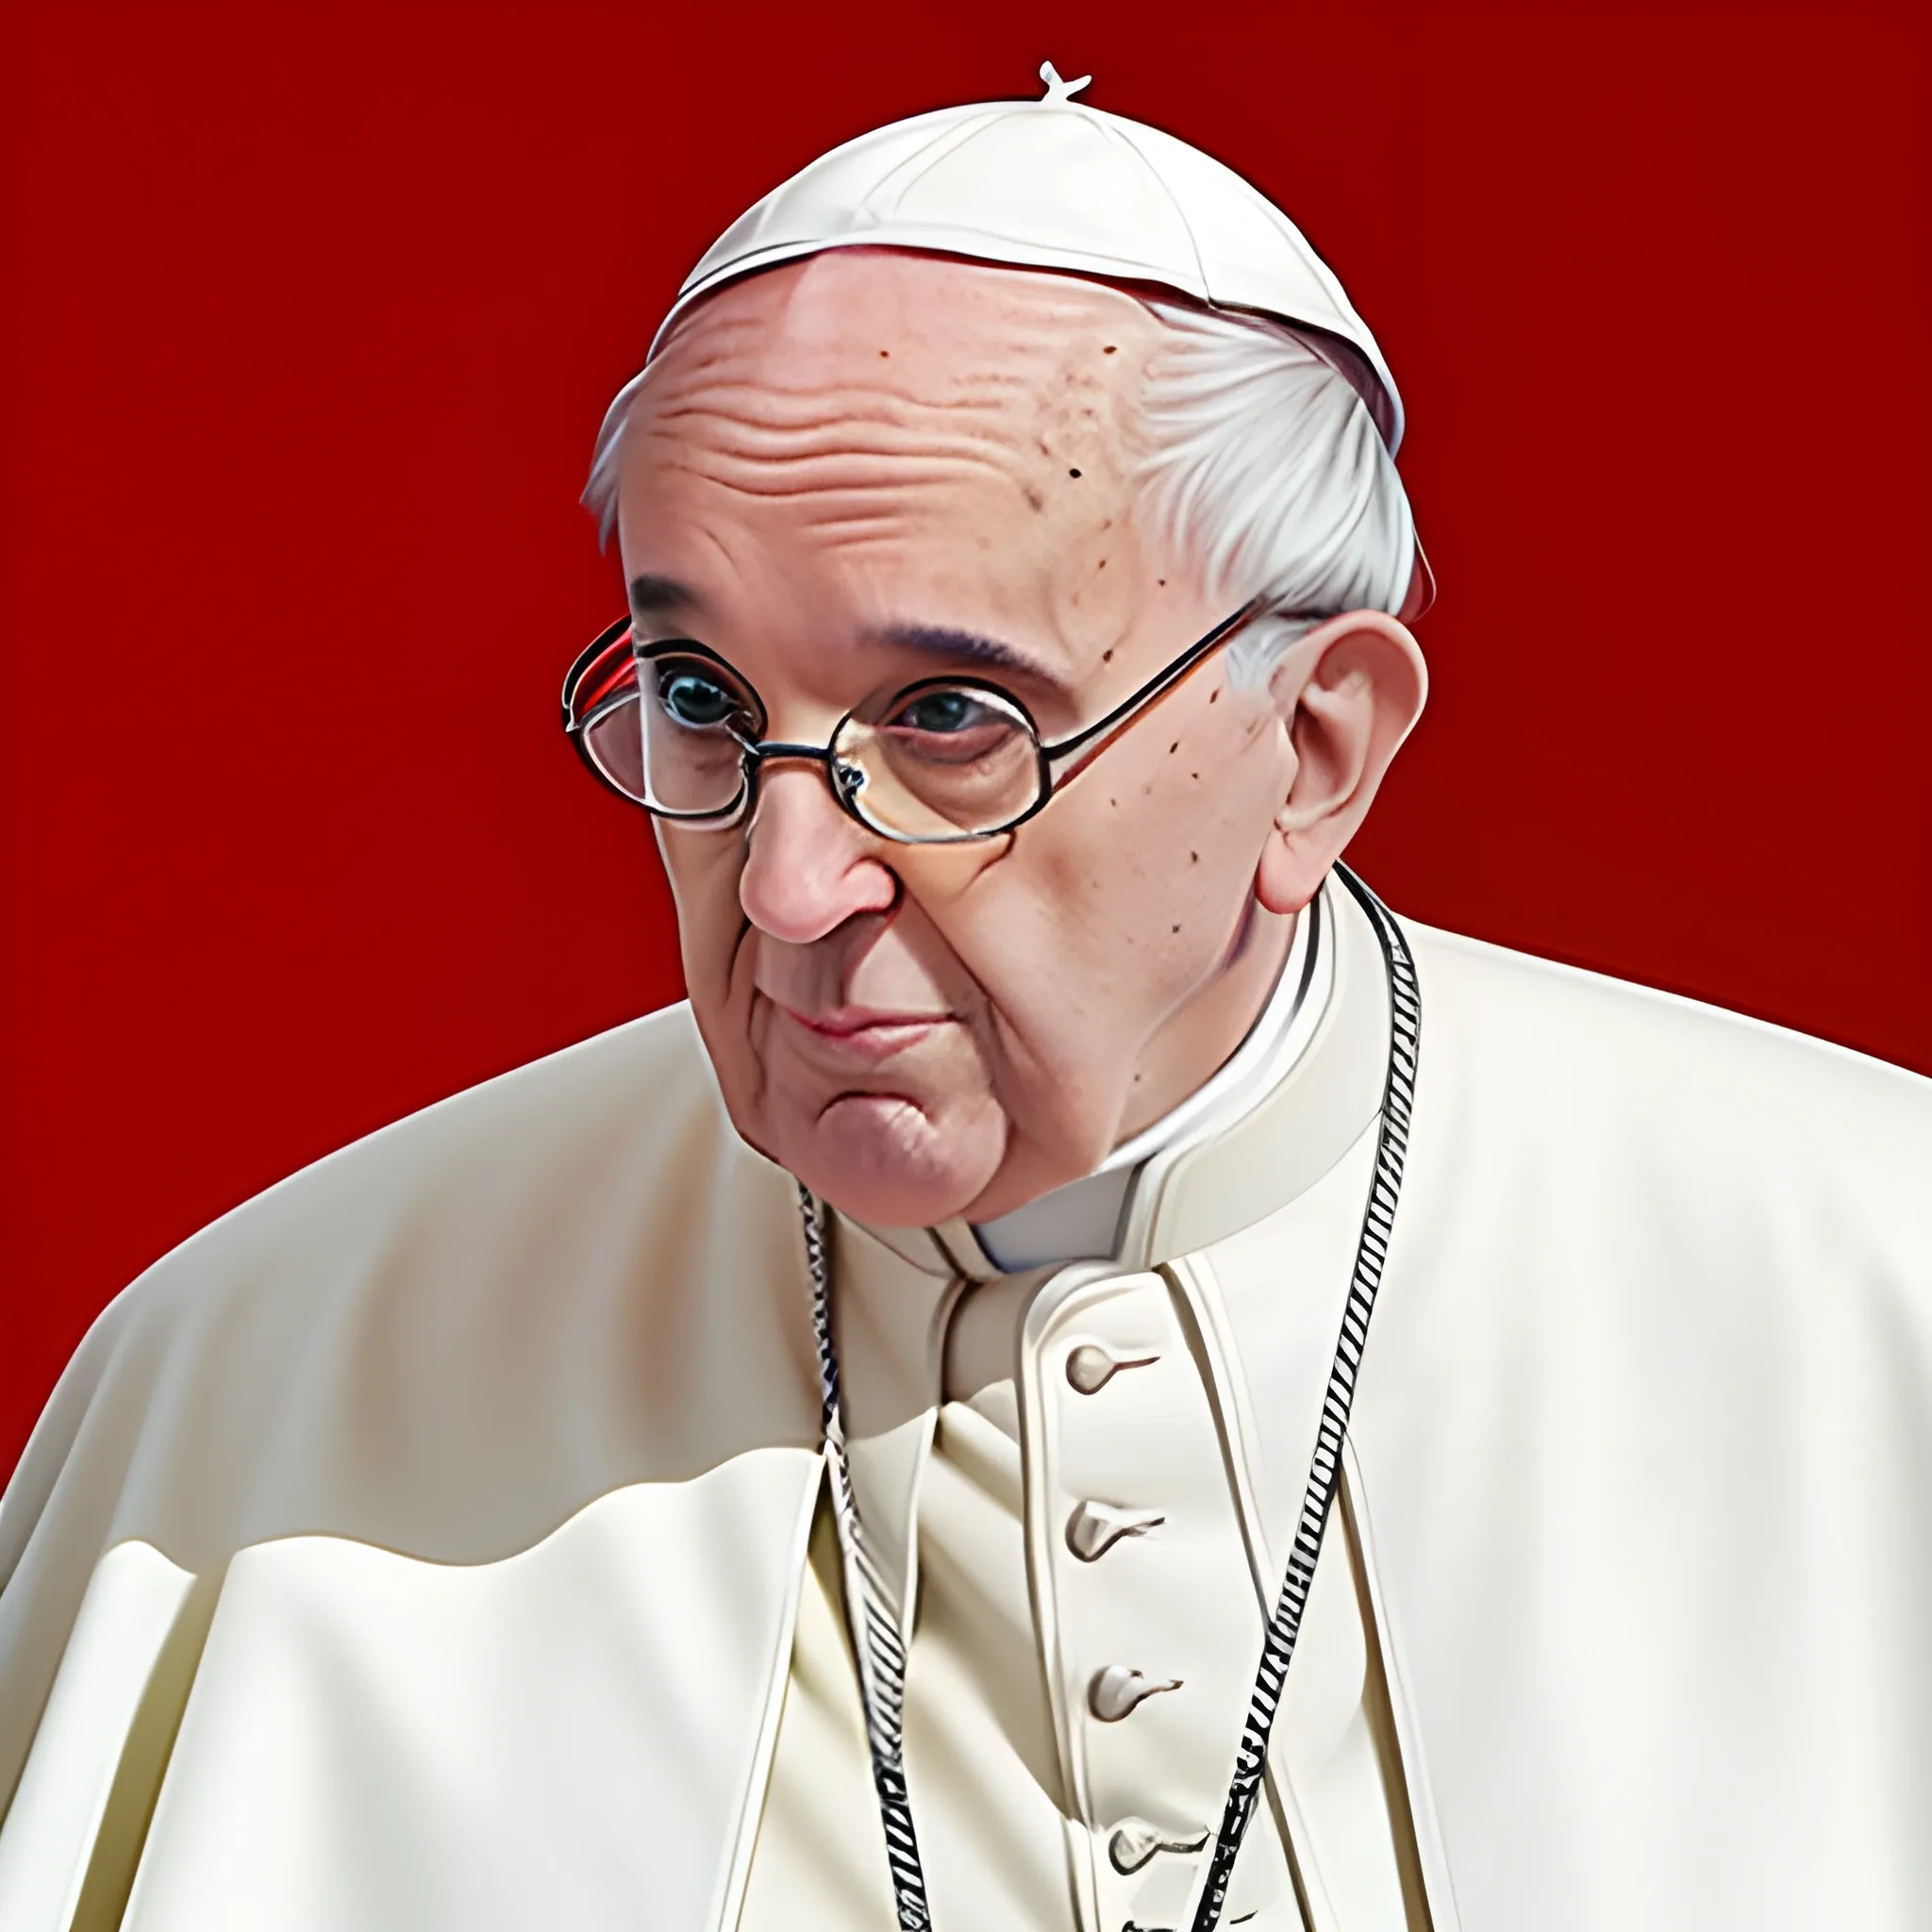 the pope wearing prada